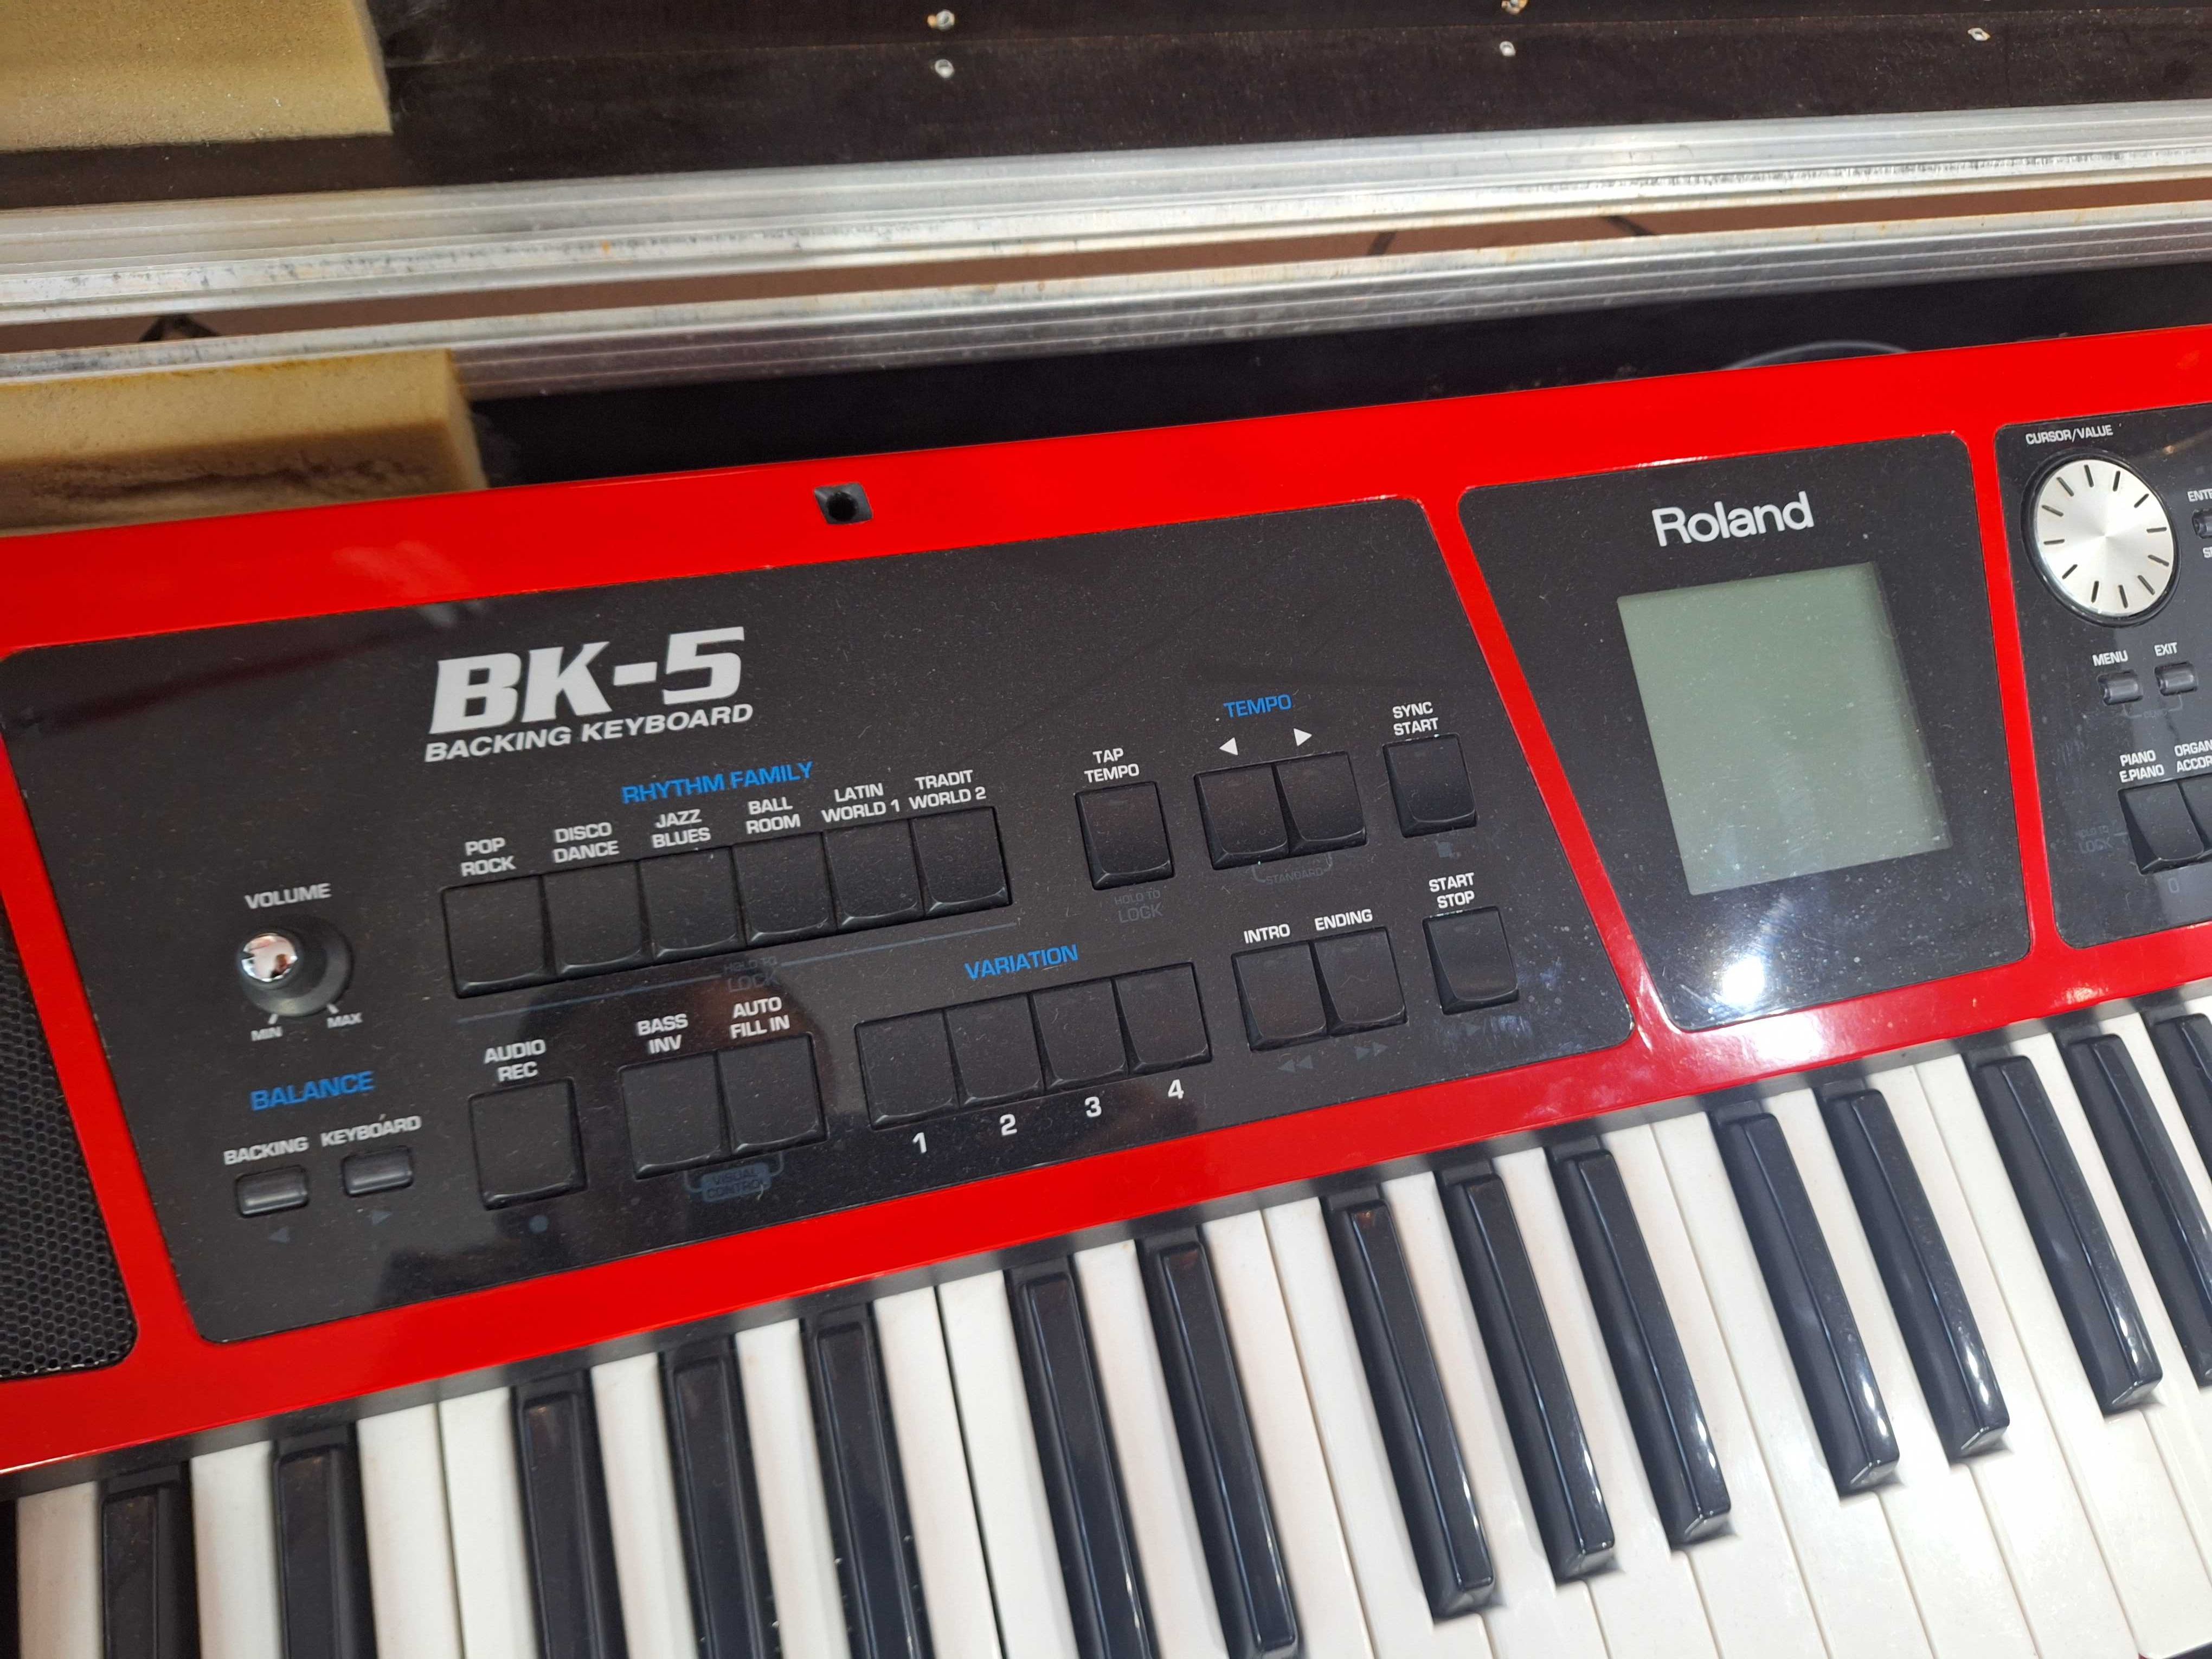 ZADBANY keyboard Roland BK-5 BK5 czerwony USB MP3 + case kejs